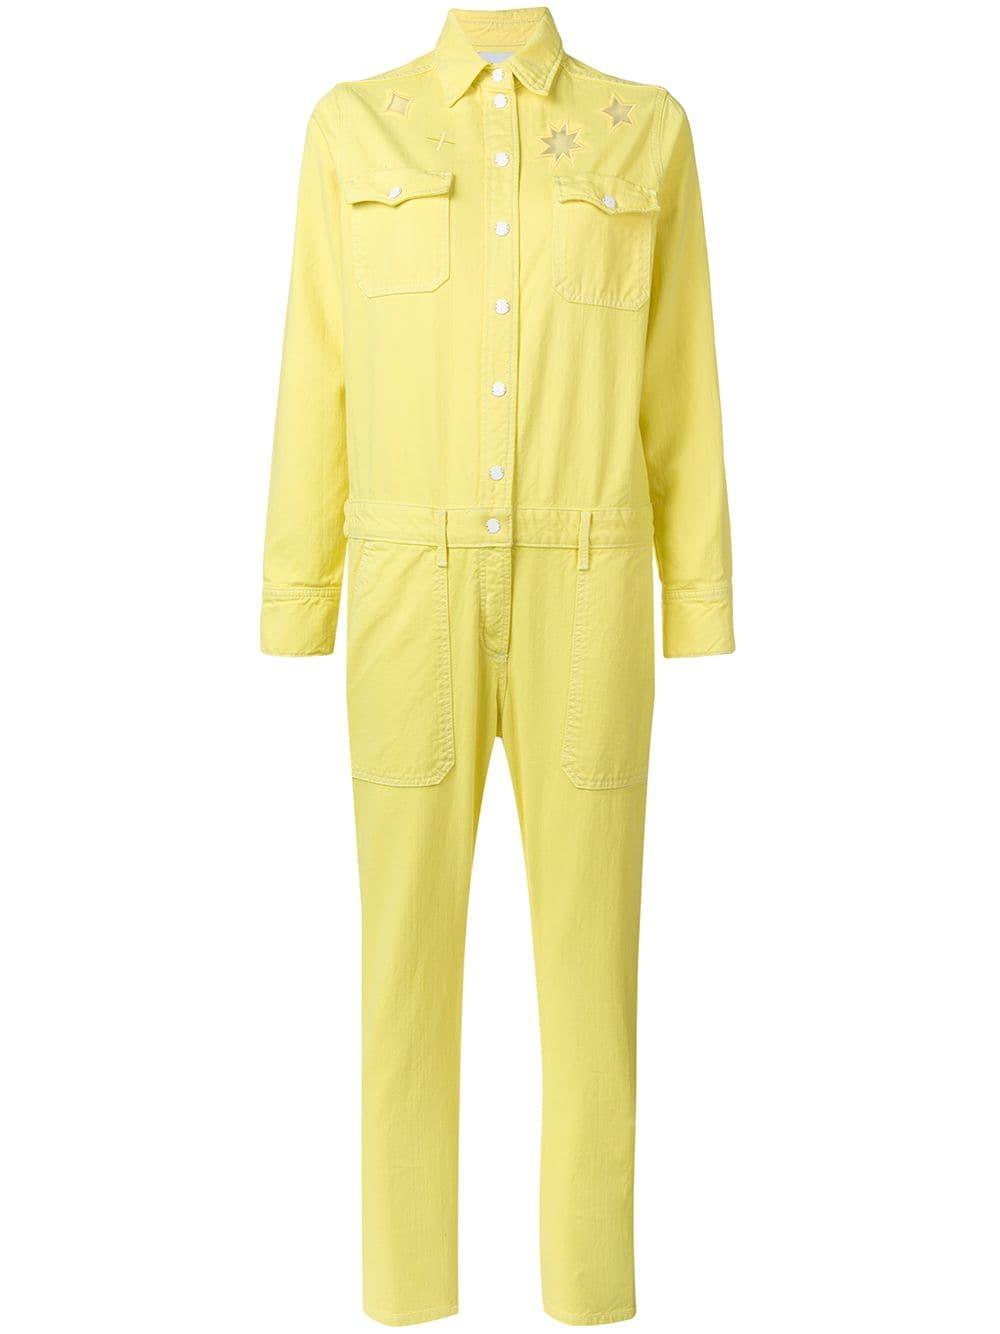 yellow denim overalls